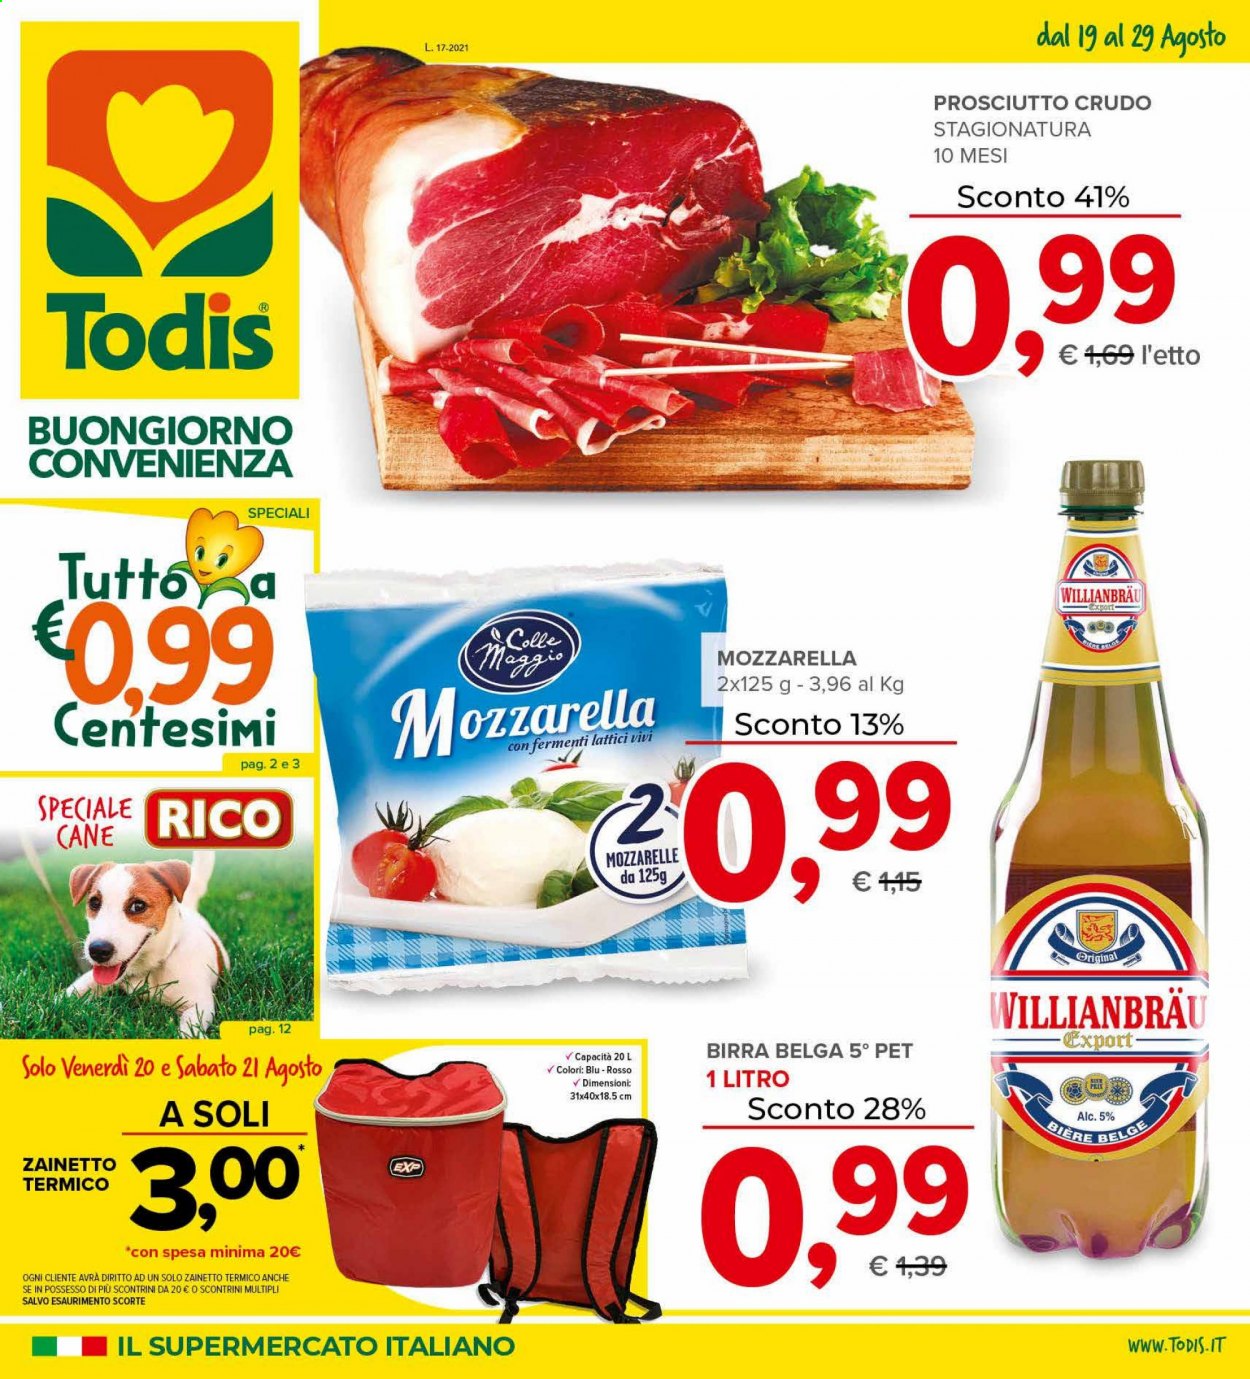 thumbnail - Volantino Todis - 19/8/2021 - 29/8/2021 - Prodotti in offerta - birra, prosciutto, prosciutto crudo, formaggio, mozzarella. Pagina 1.